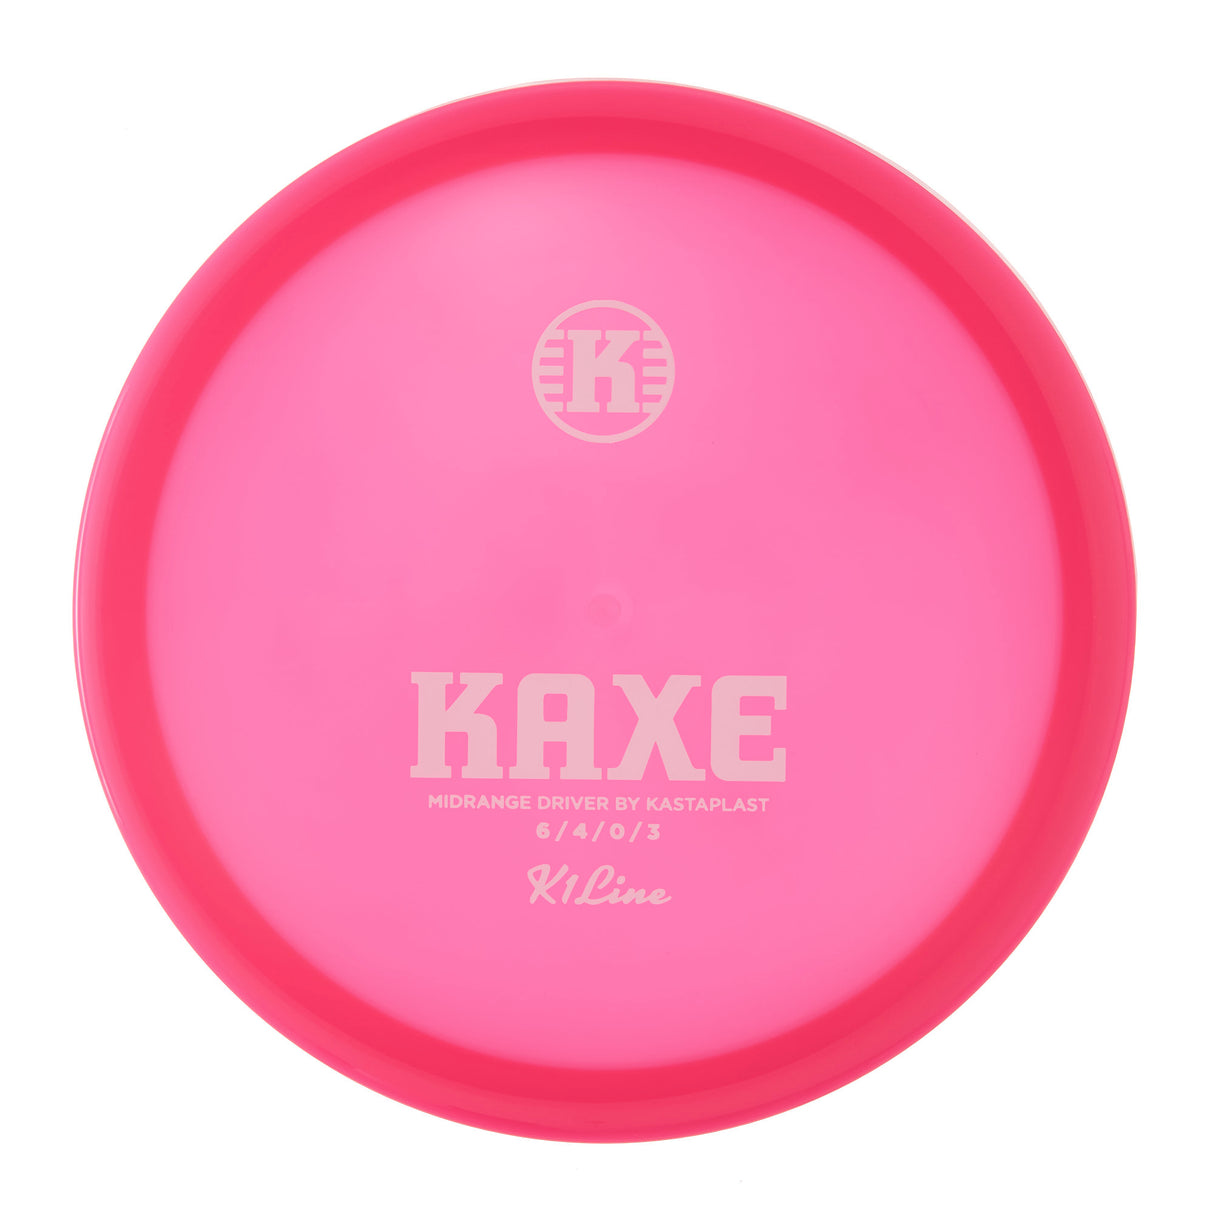 Kastaplast Kaxe - K1 169g | Style 0001